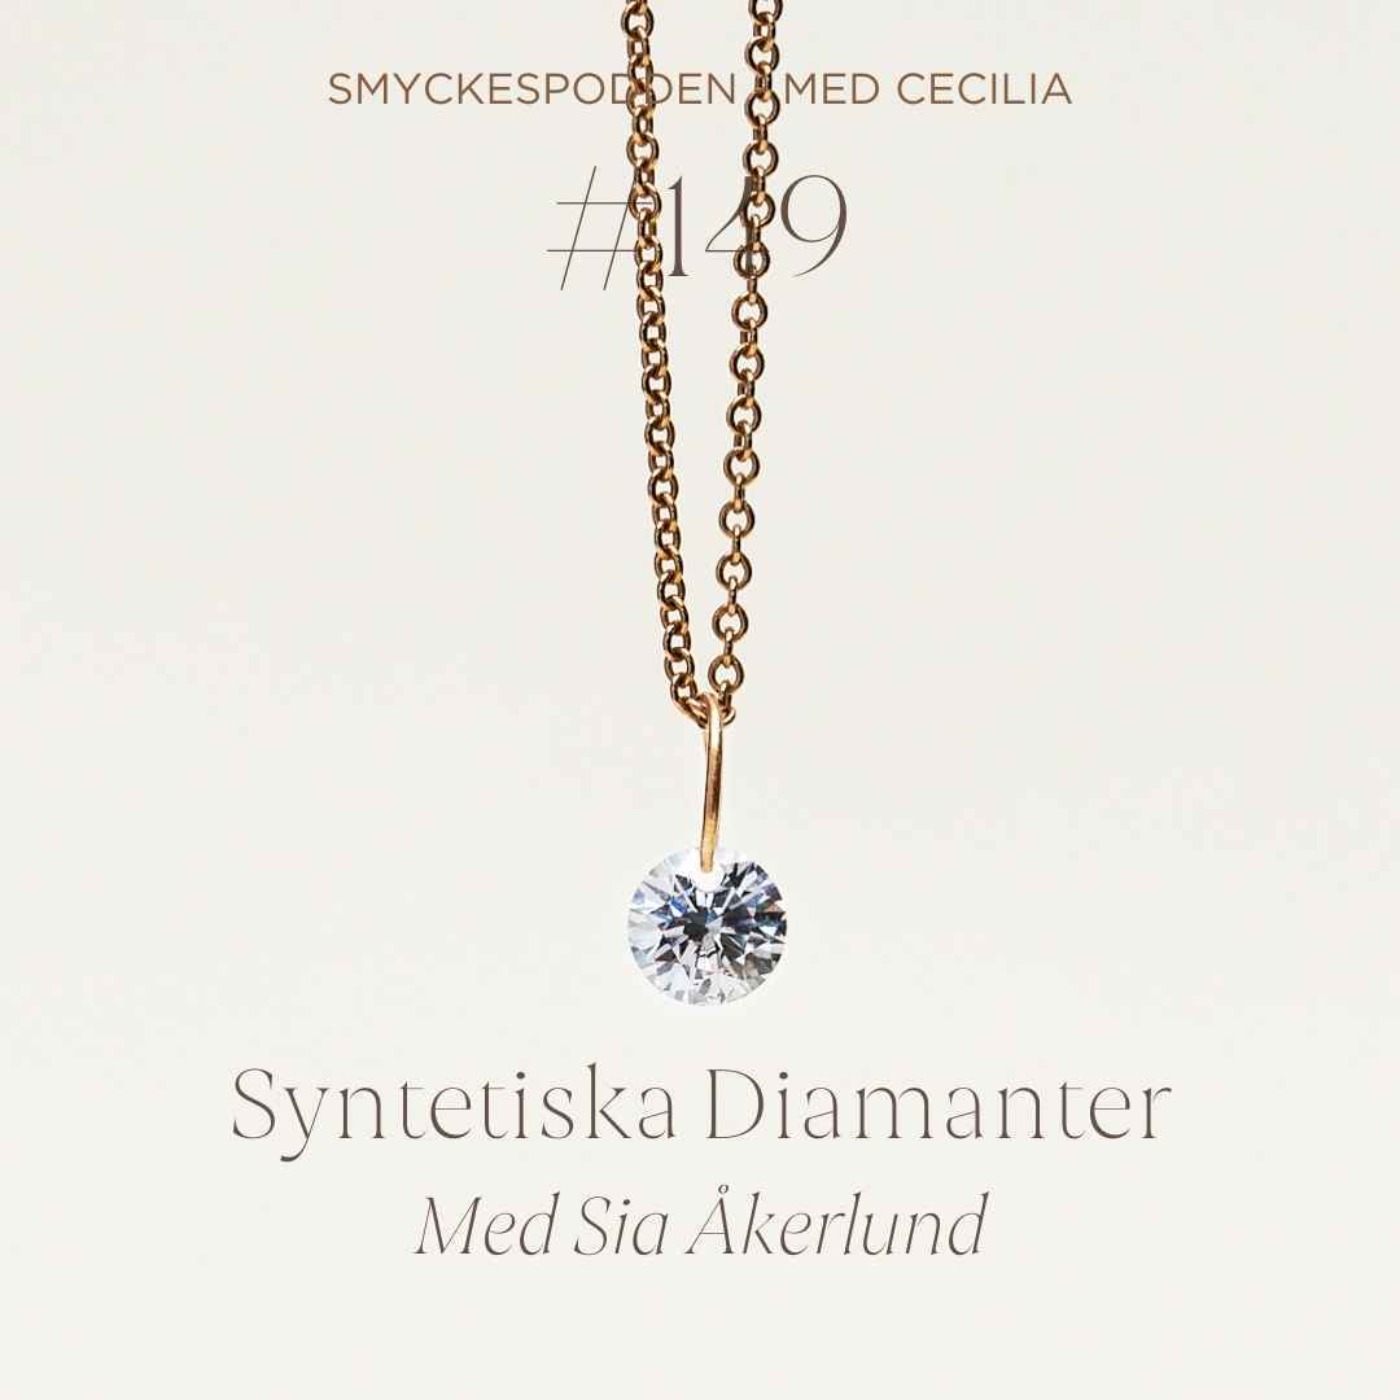 149. Kort avsnitt om: Syntetiska diamanter med Sia Åkerlund